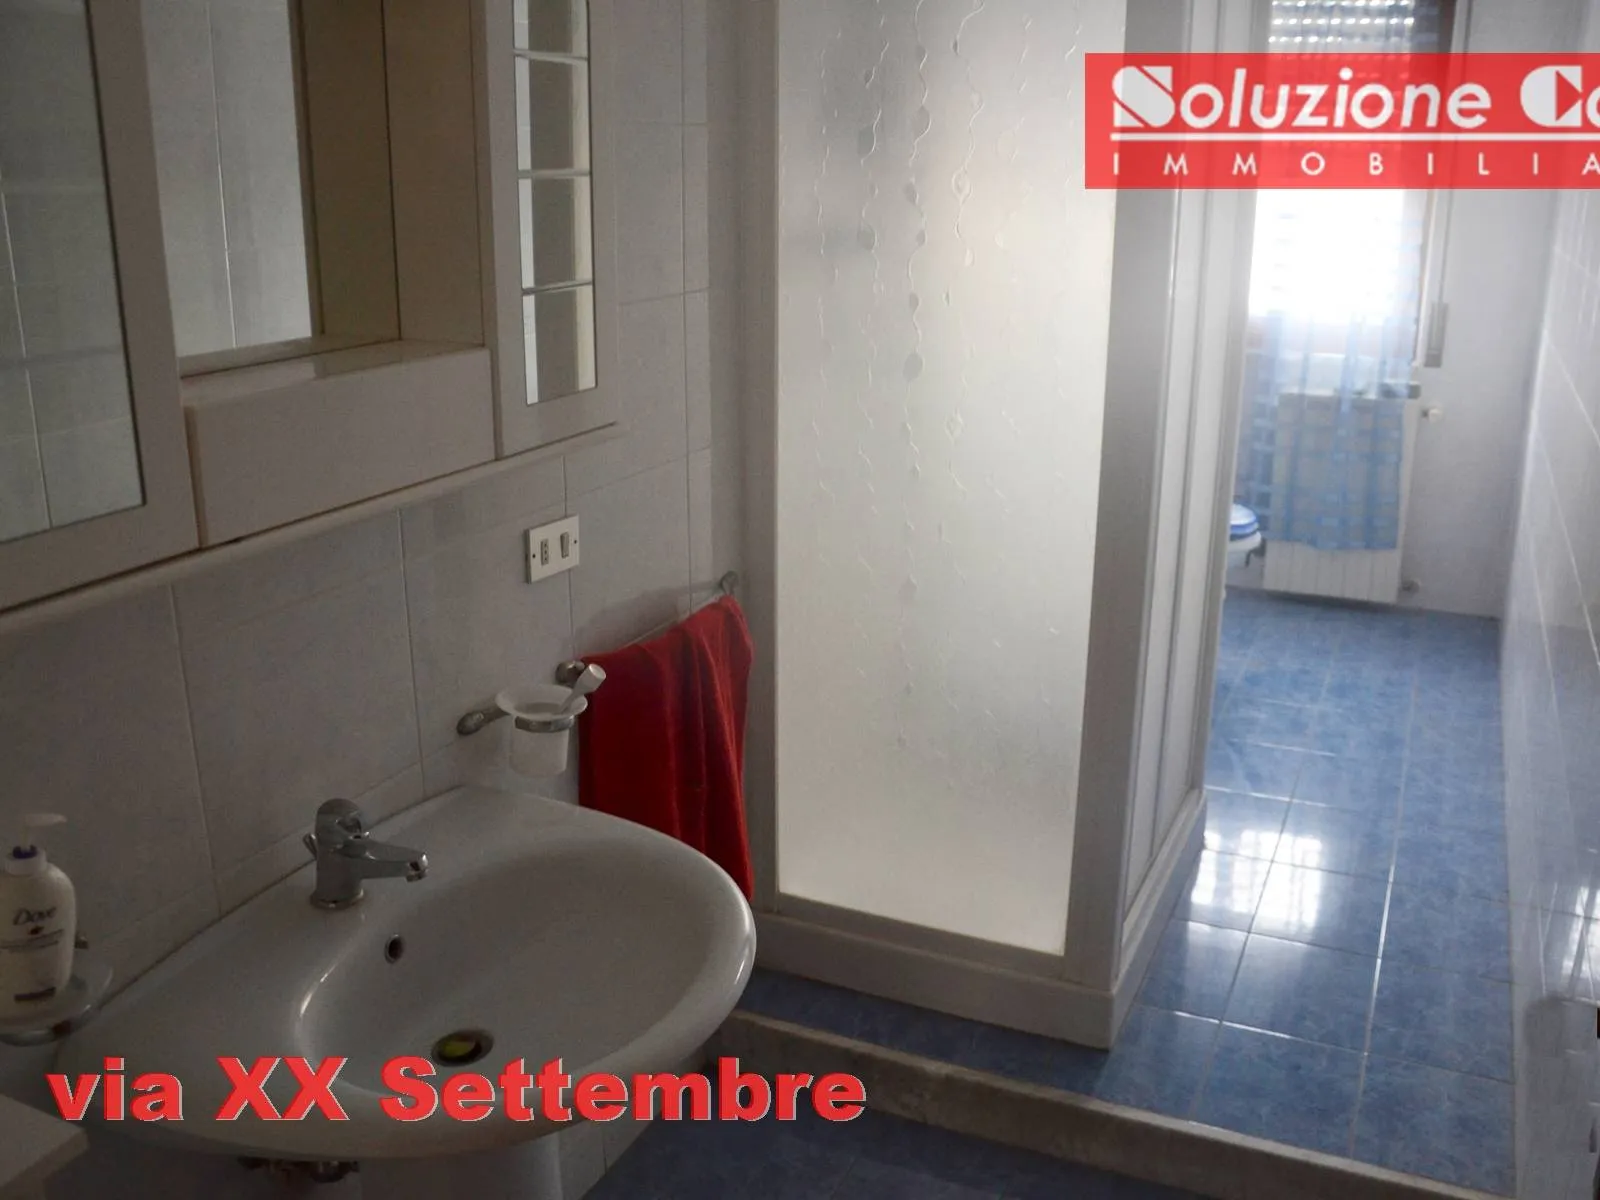 Immagine per Appartamento in vendita a Canosa di Puglia via XX Settembre